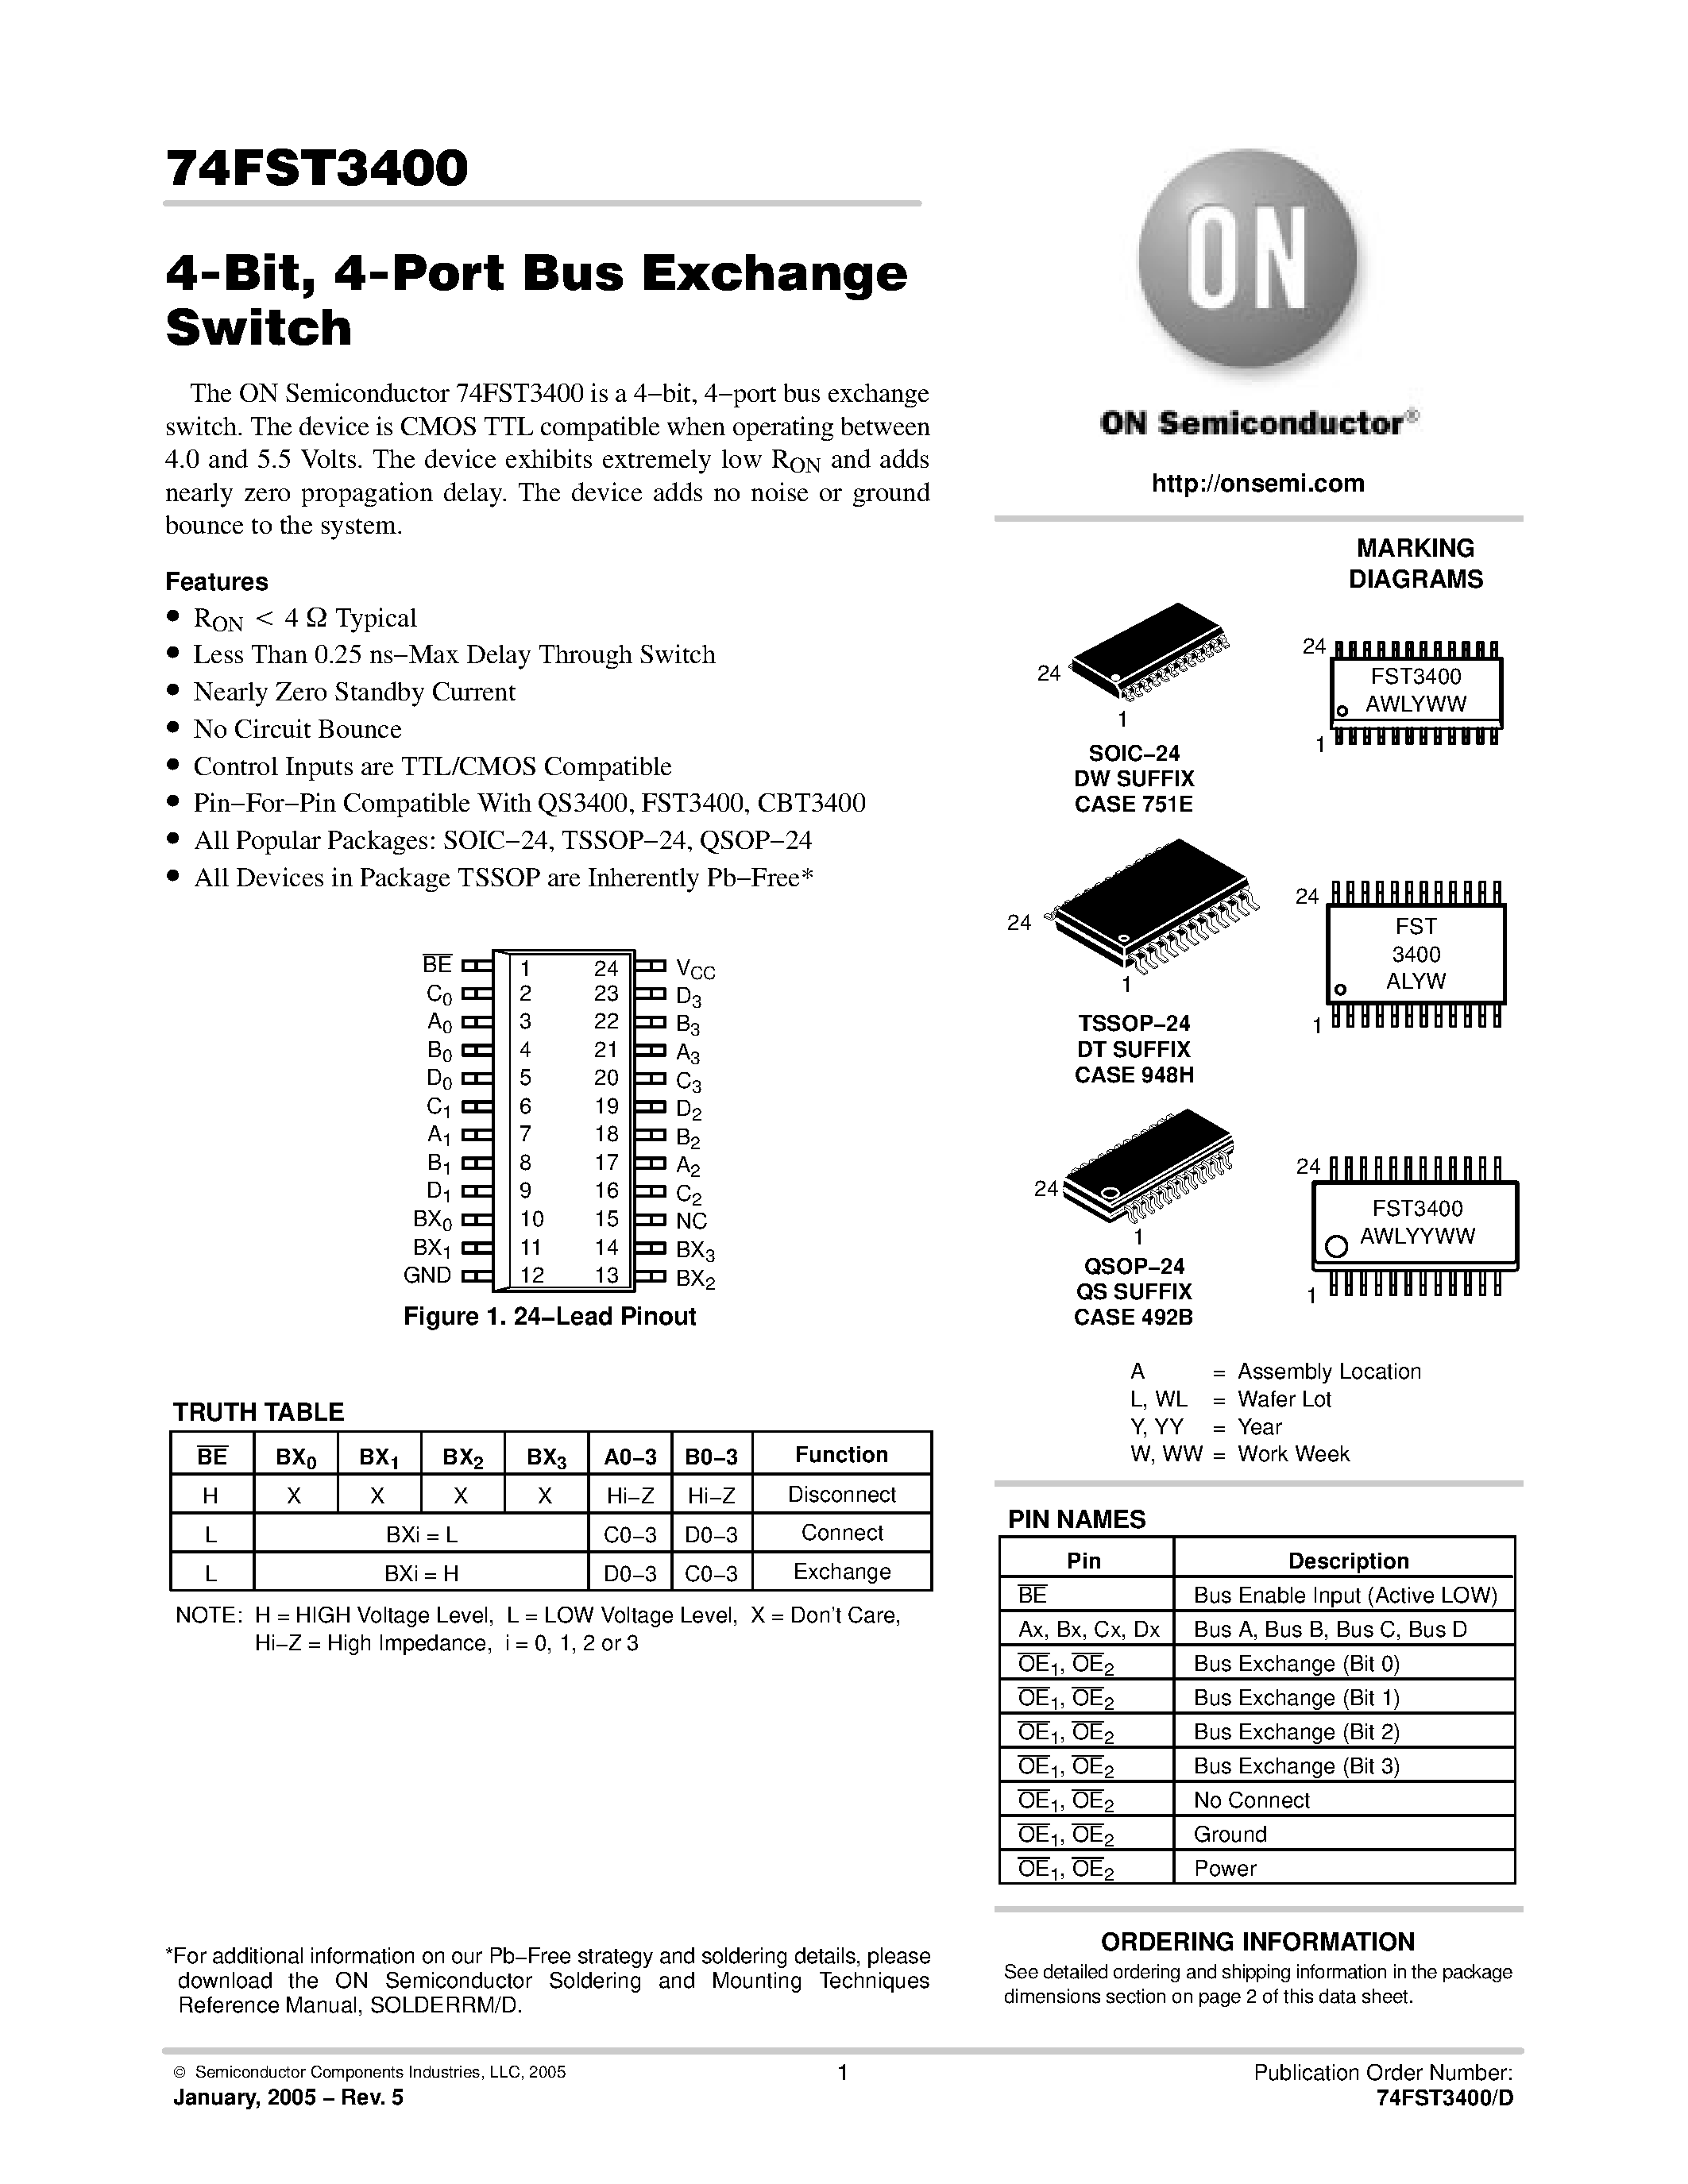 Datasheet 74FST3400DTR2 - 4-Bit / 4-Port Bus Exchange Switch page 1